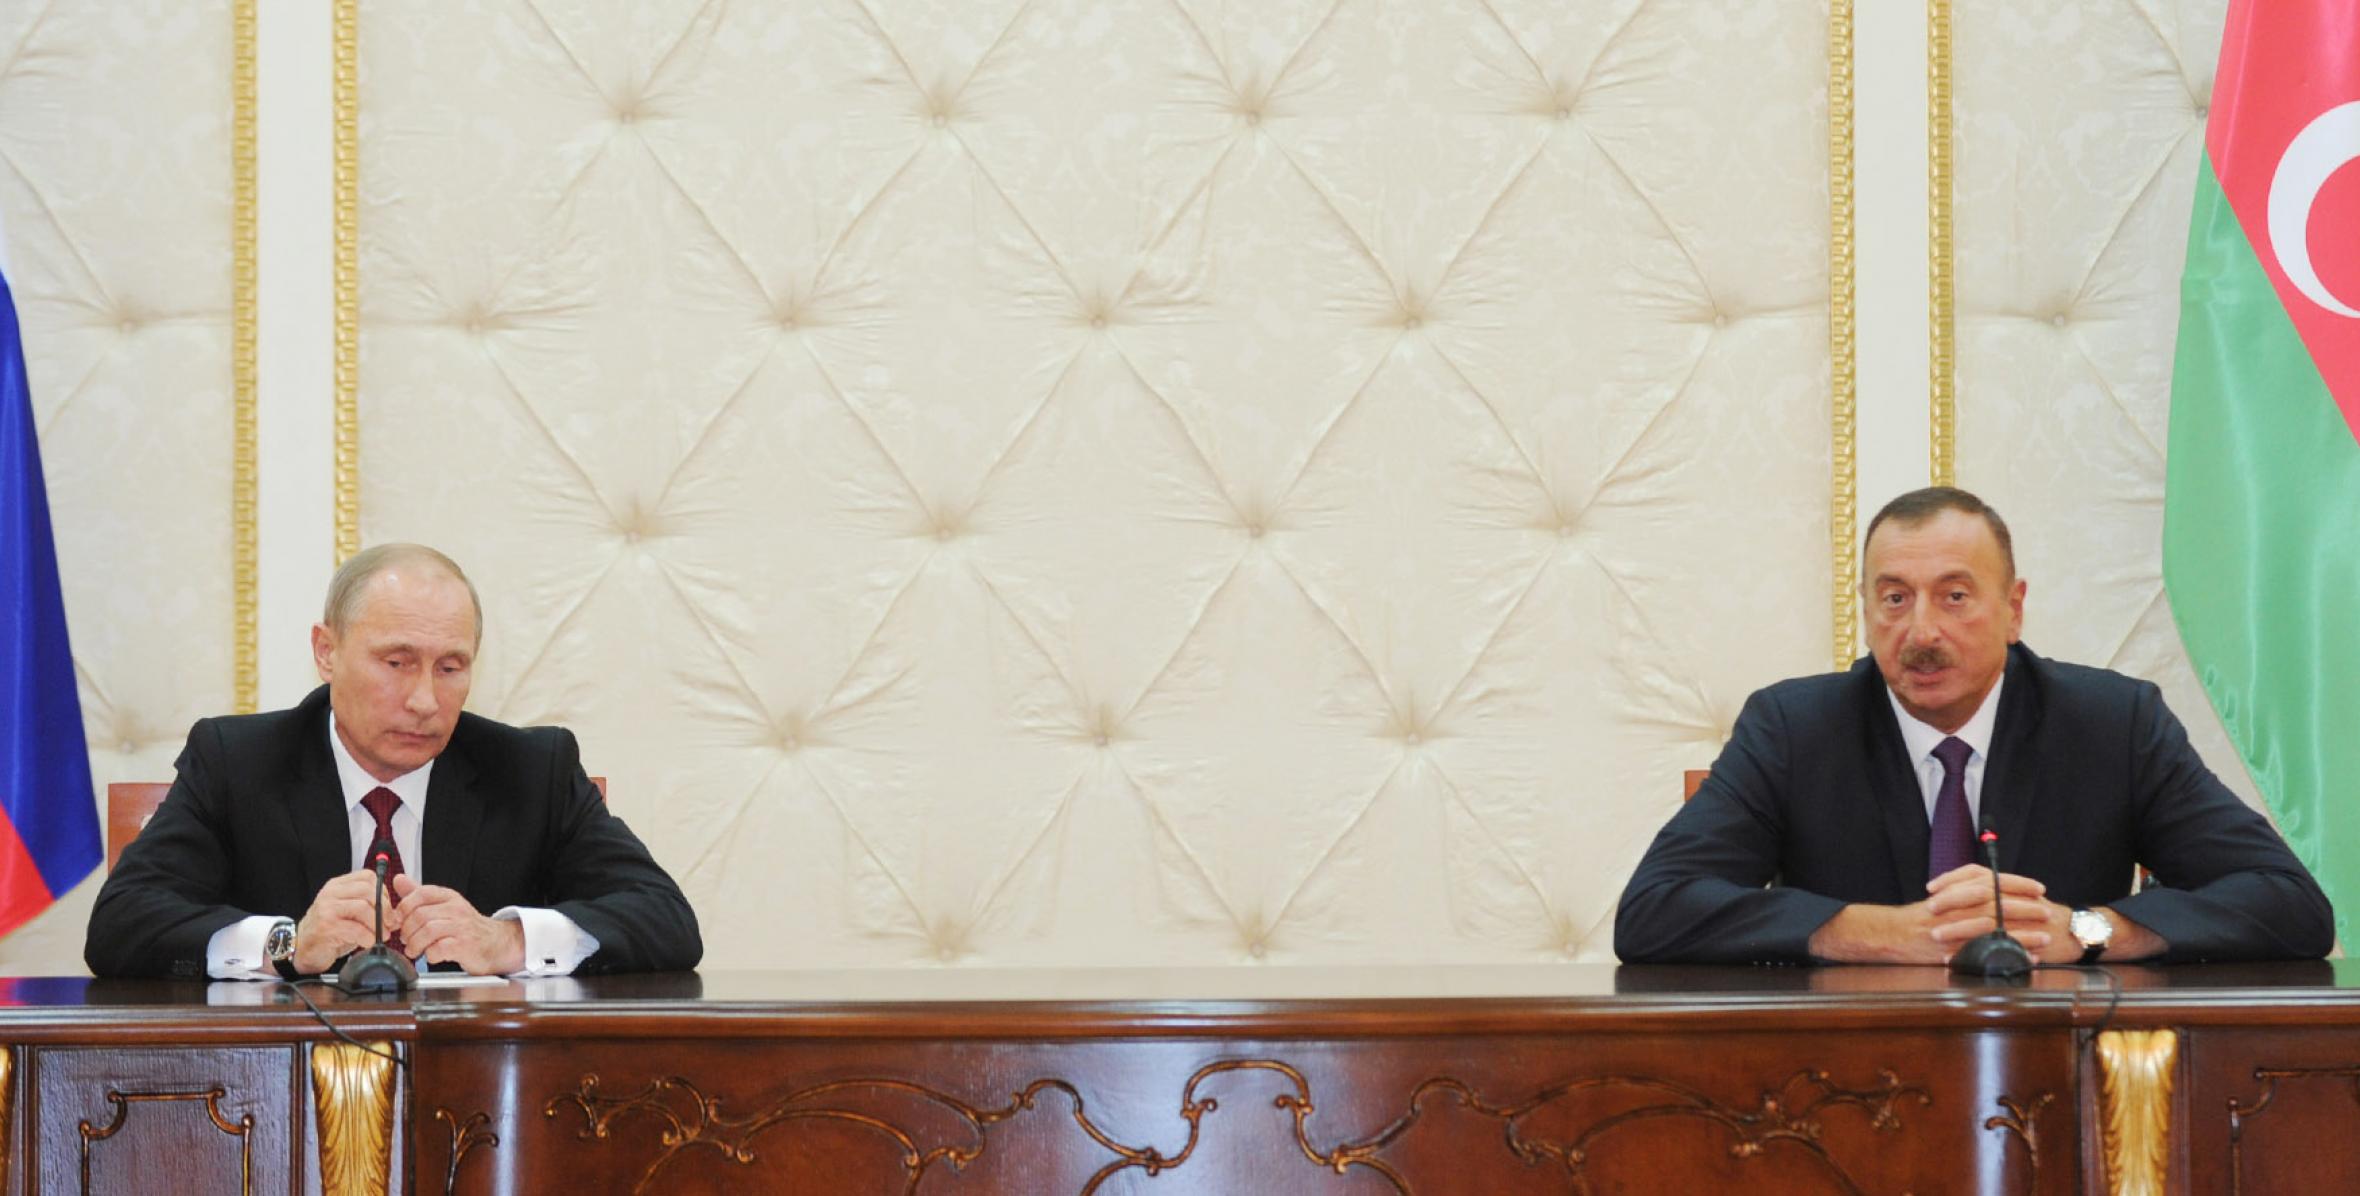 İlham Əliyev və Rusiya Prezidenti Vladimir Putin bəyanatlarla çıxış etmişlər